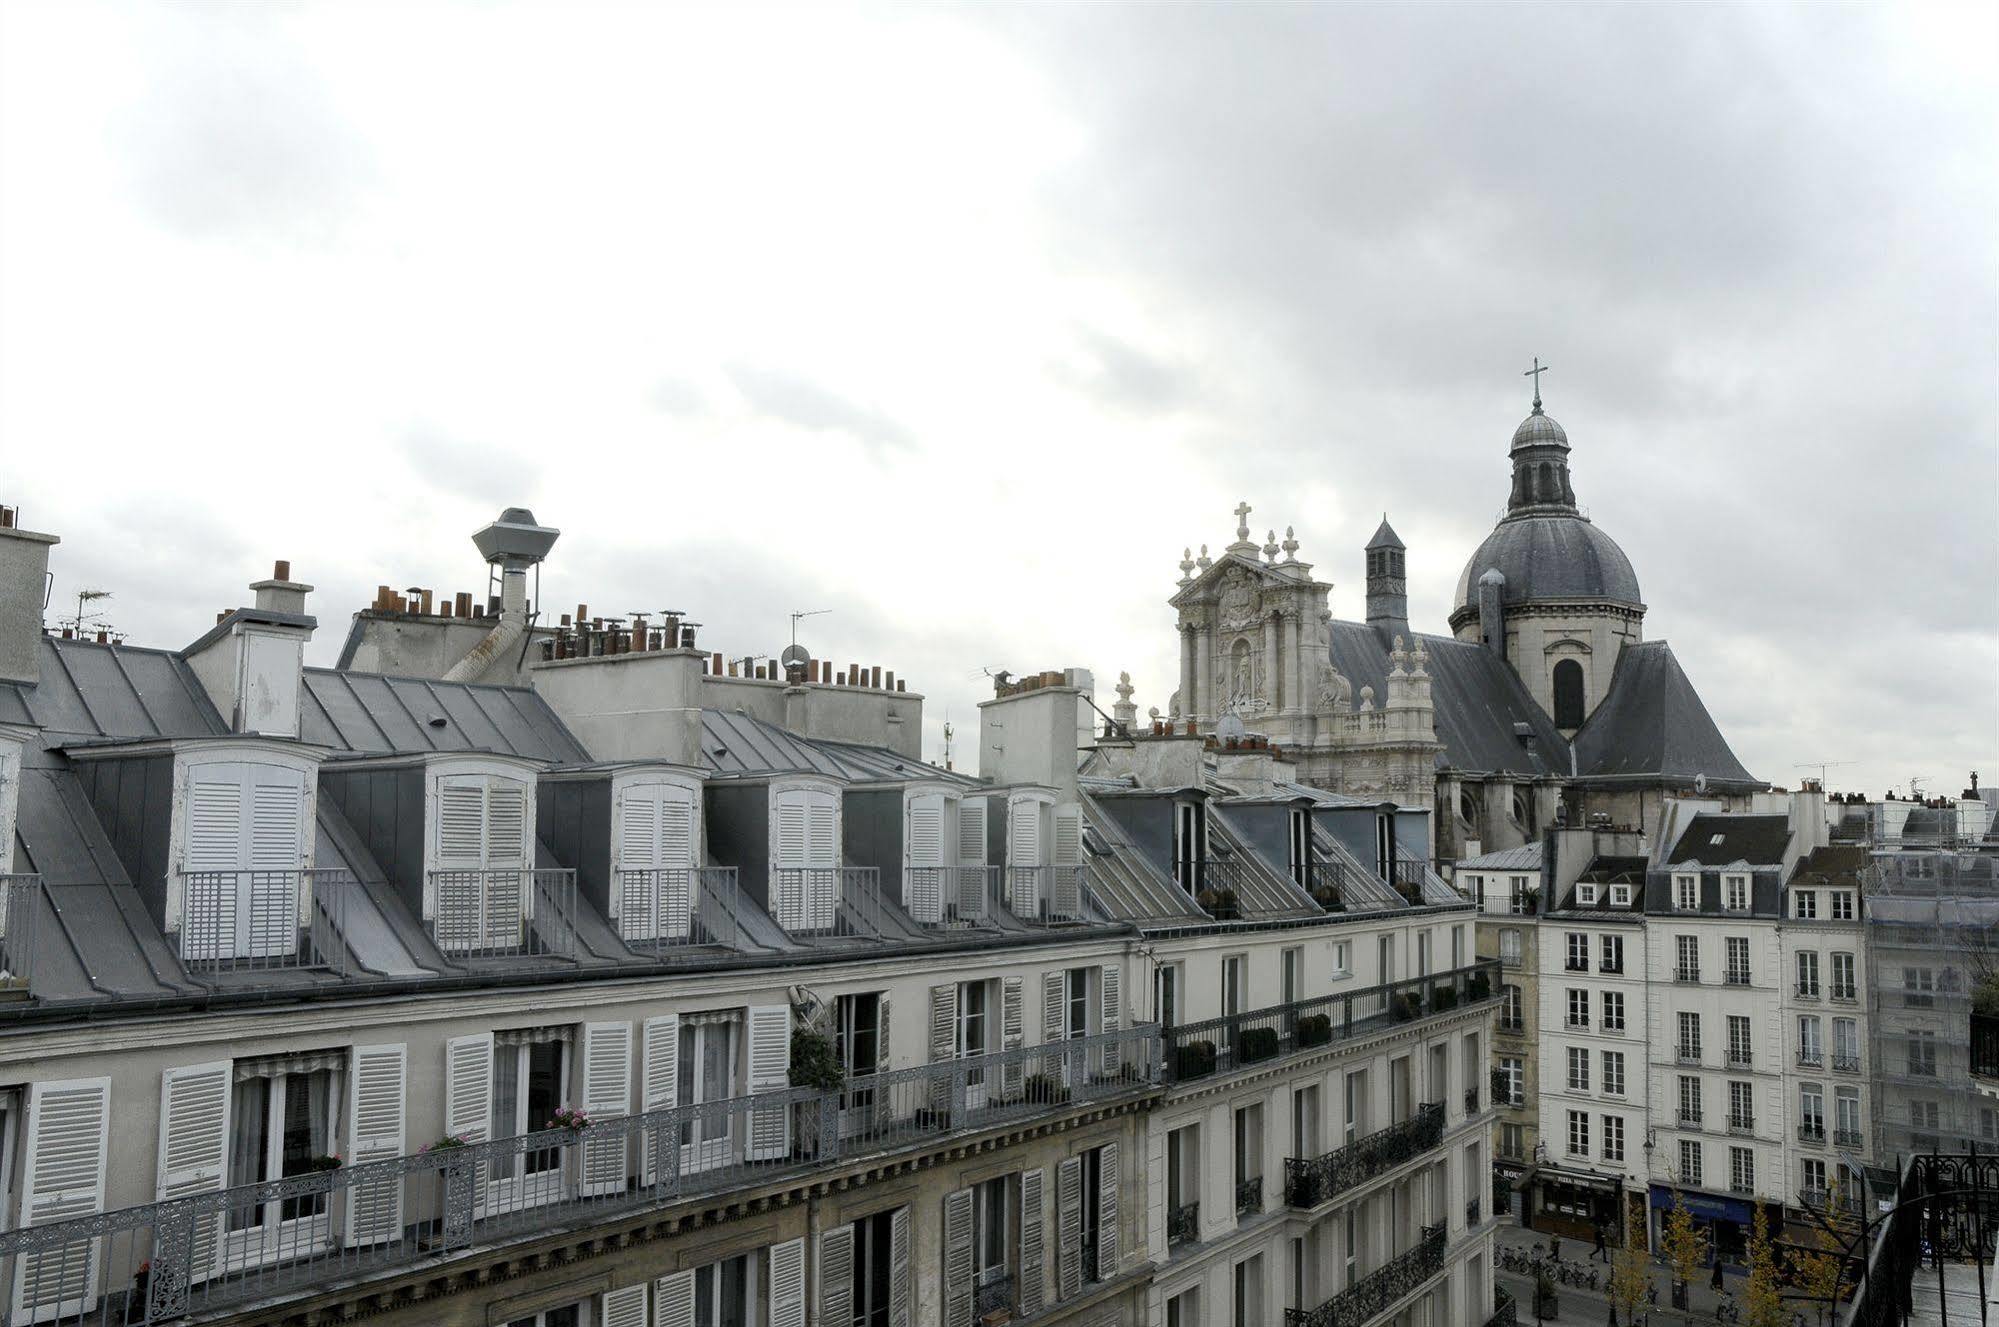 Grand Hotel Malher Paris Exterior photo